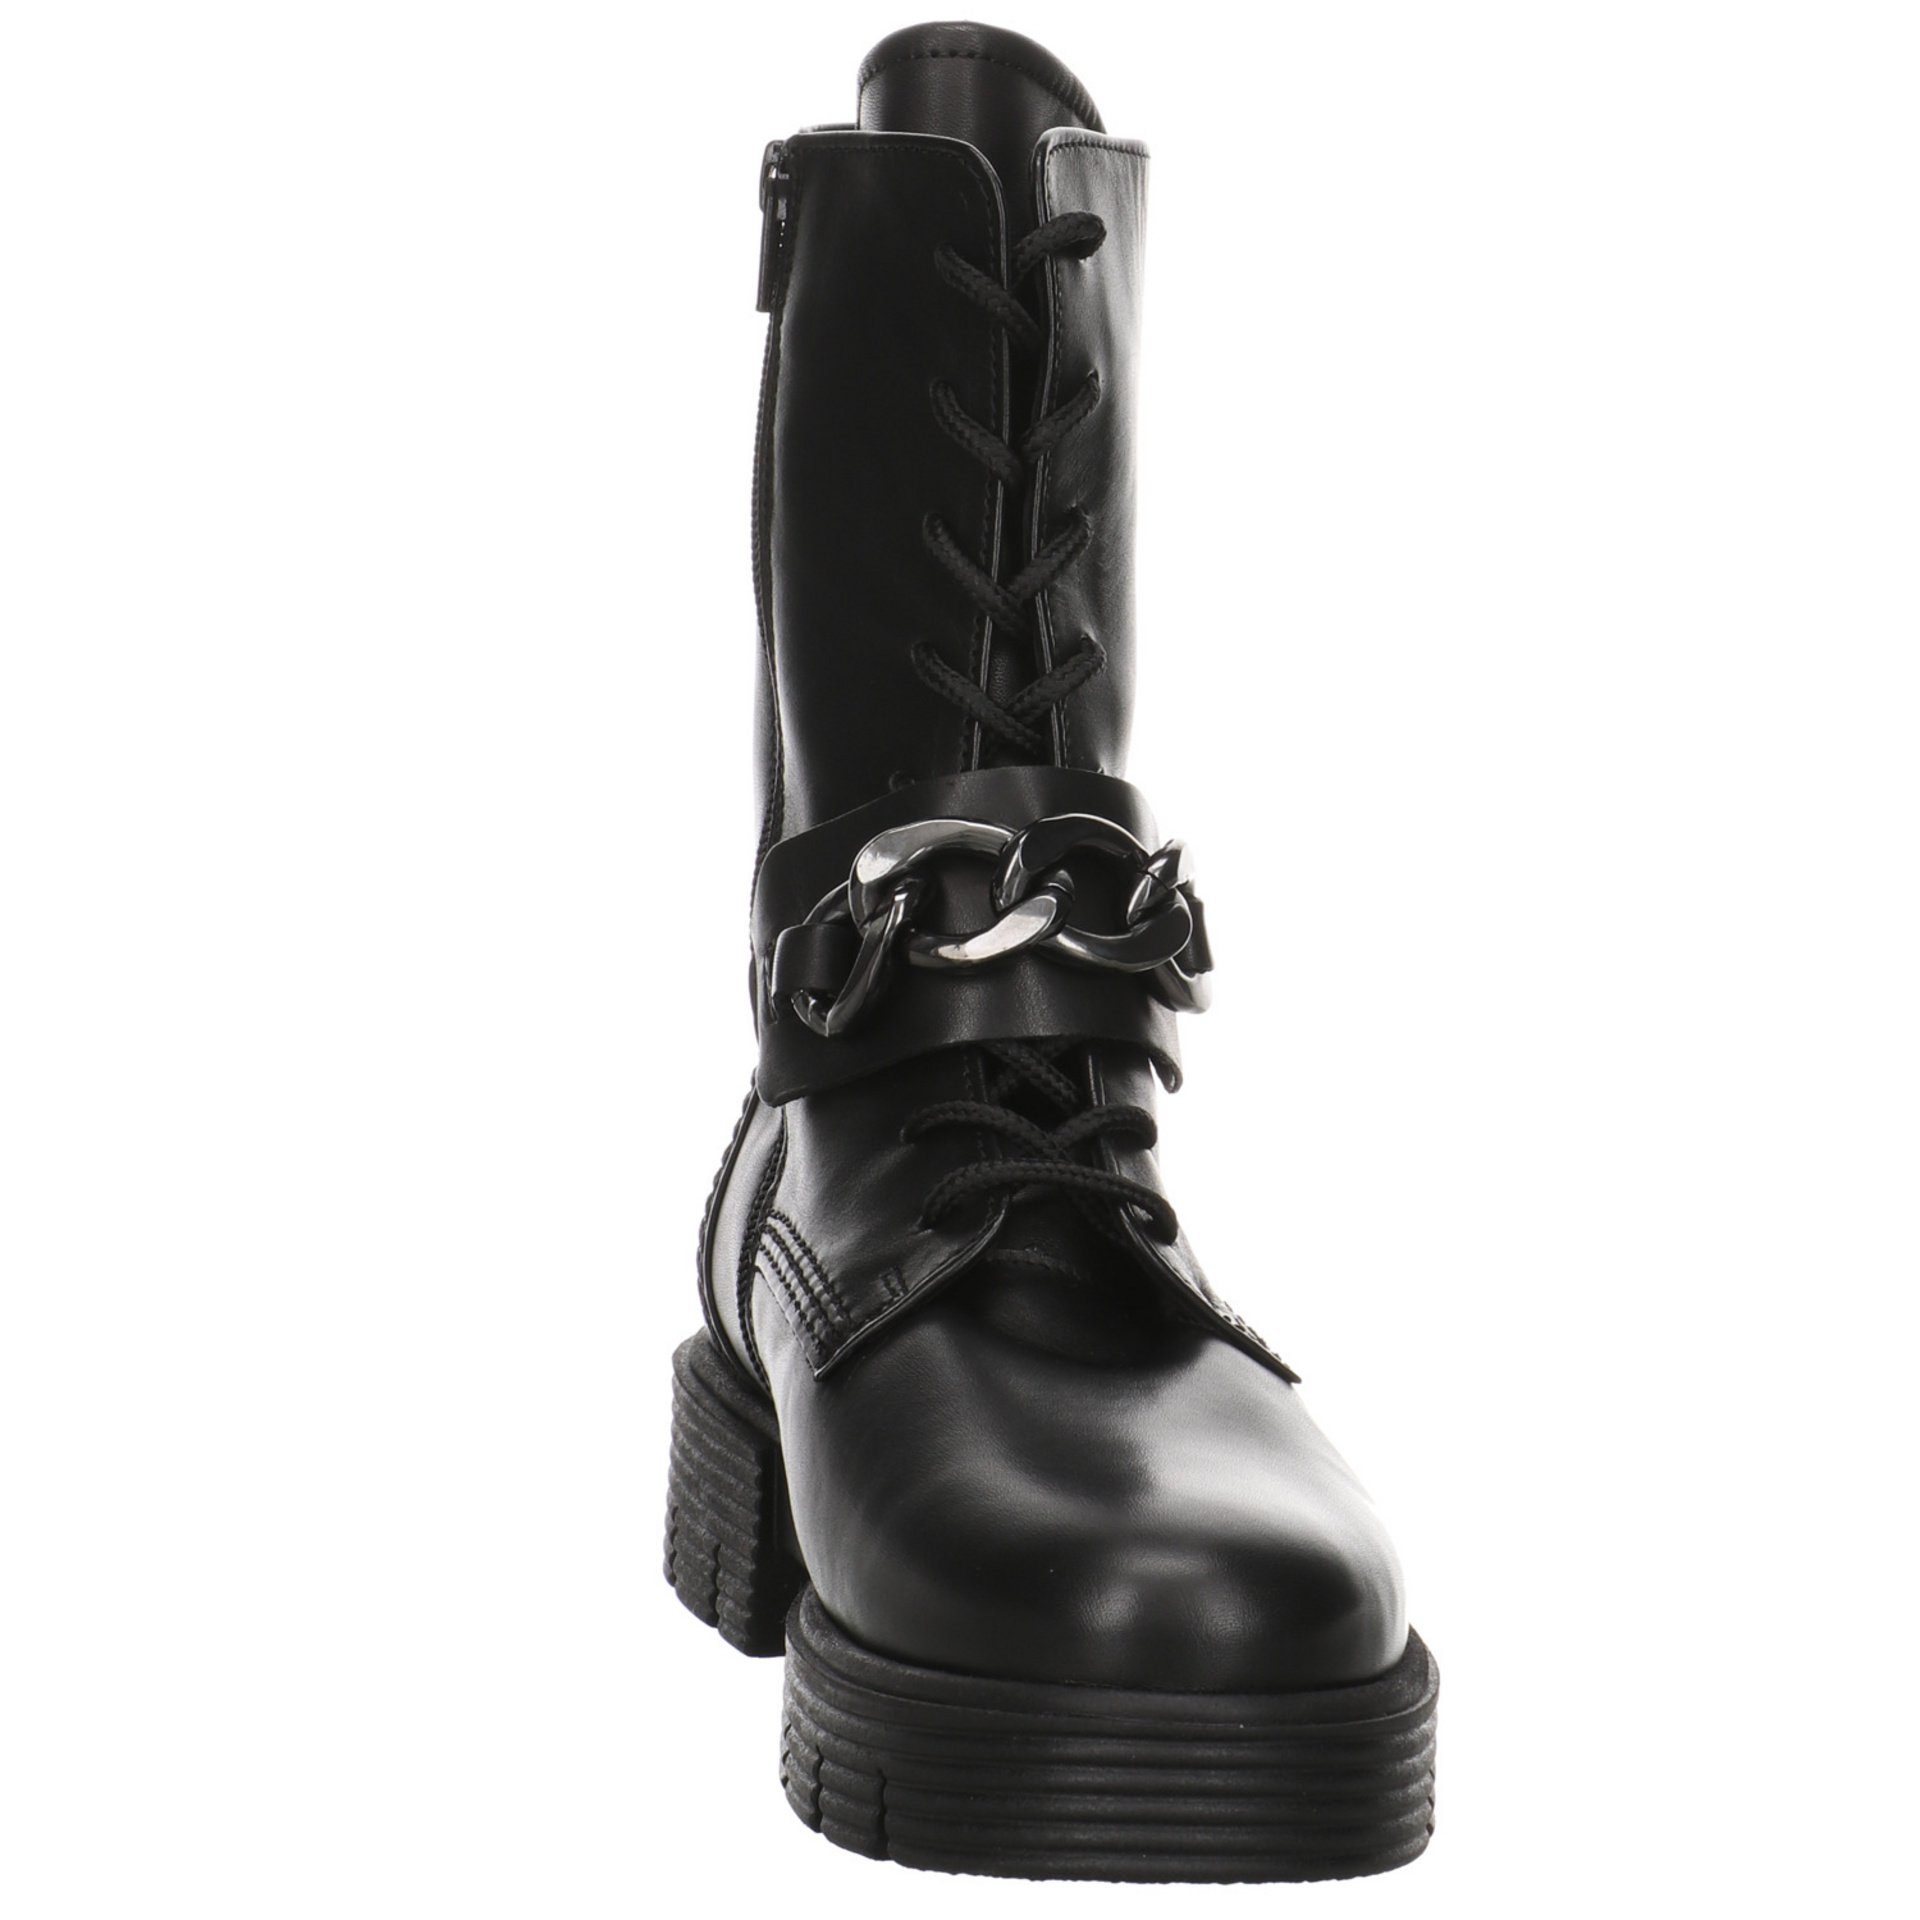 Gabor Damen Stiefel Schuhe Davos Glattleder (Flau/cdf) Elegant Schnürstiefel schwarz Boots Klassisch